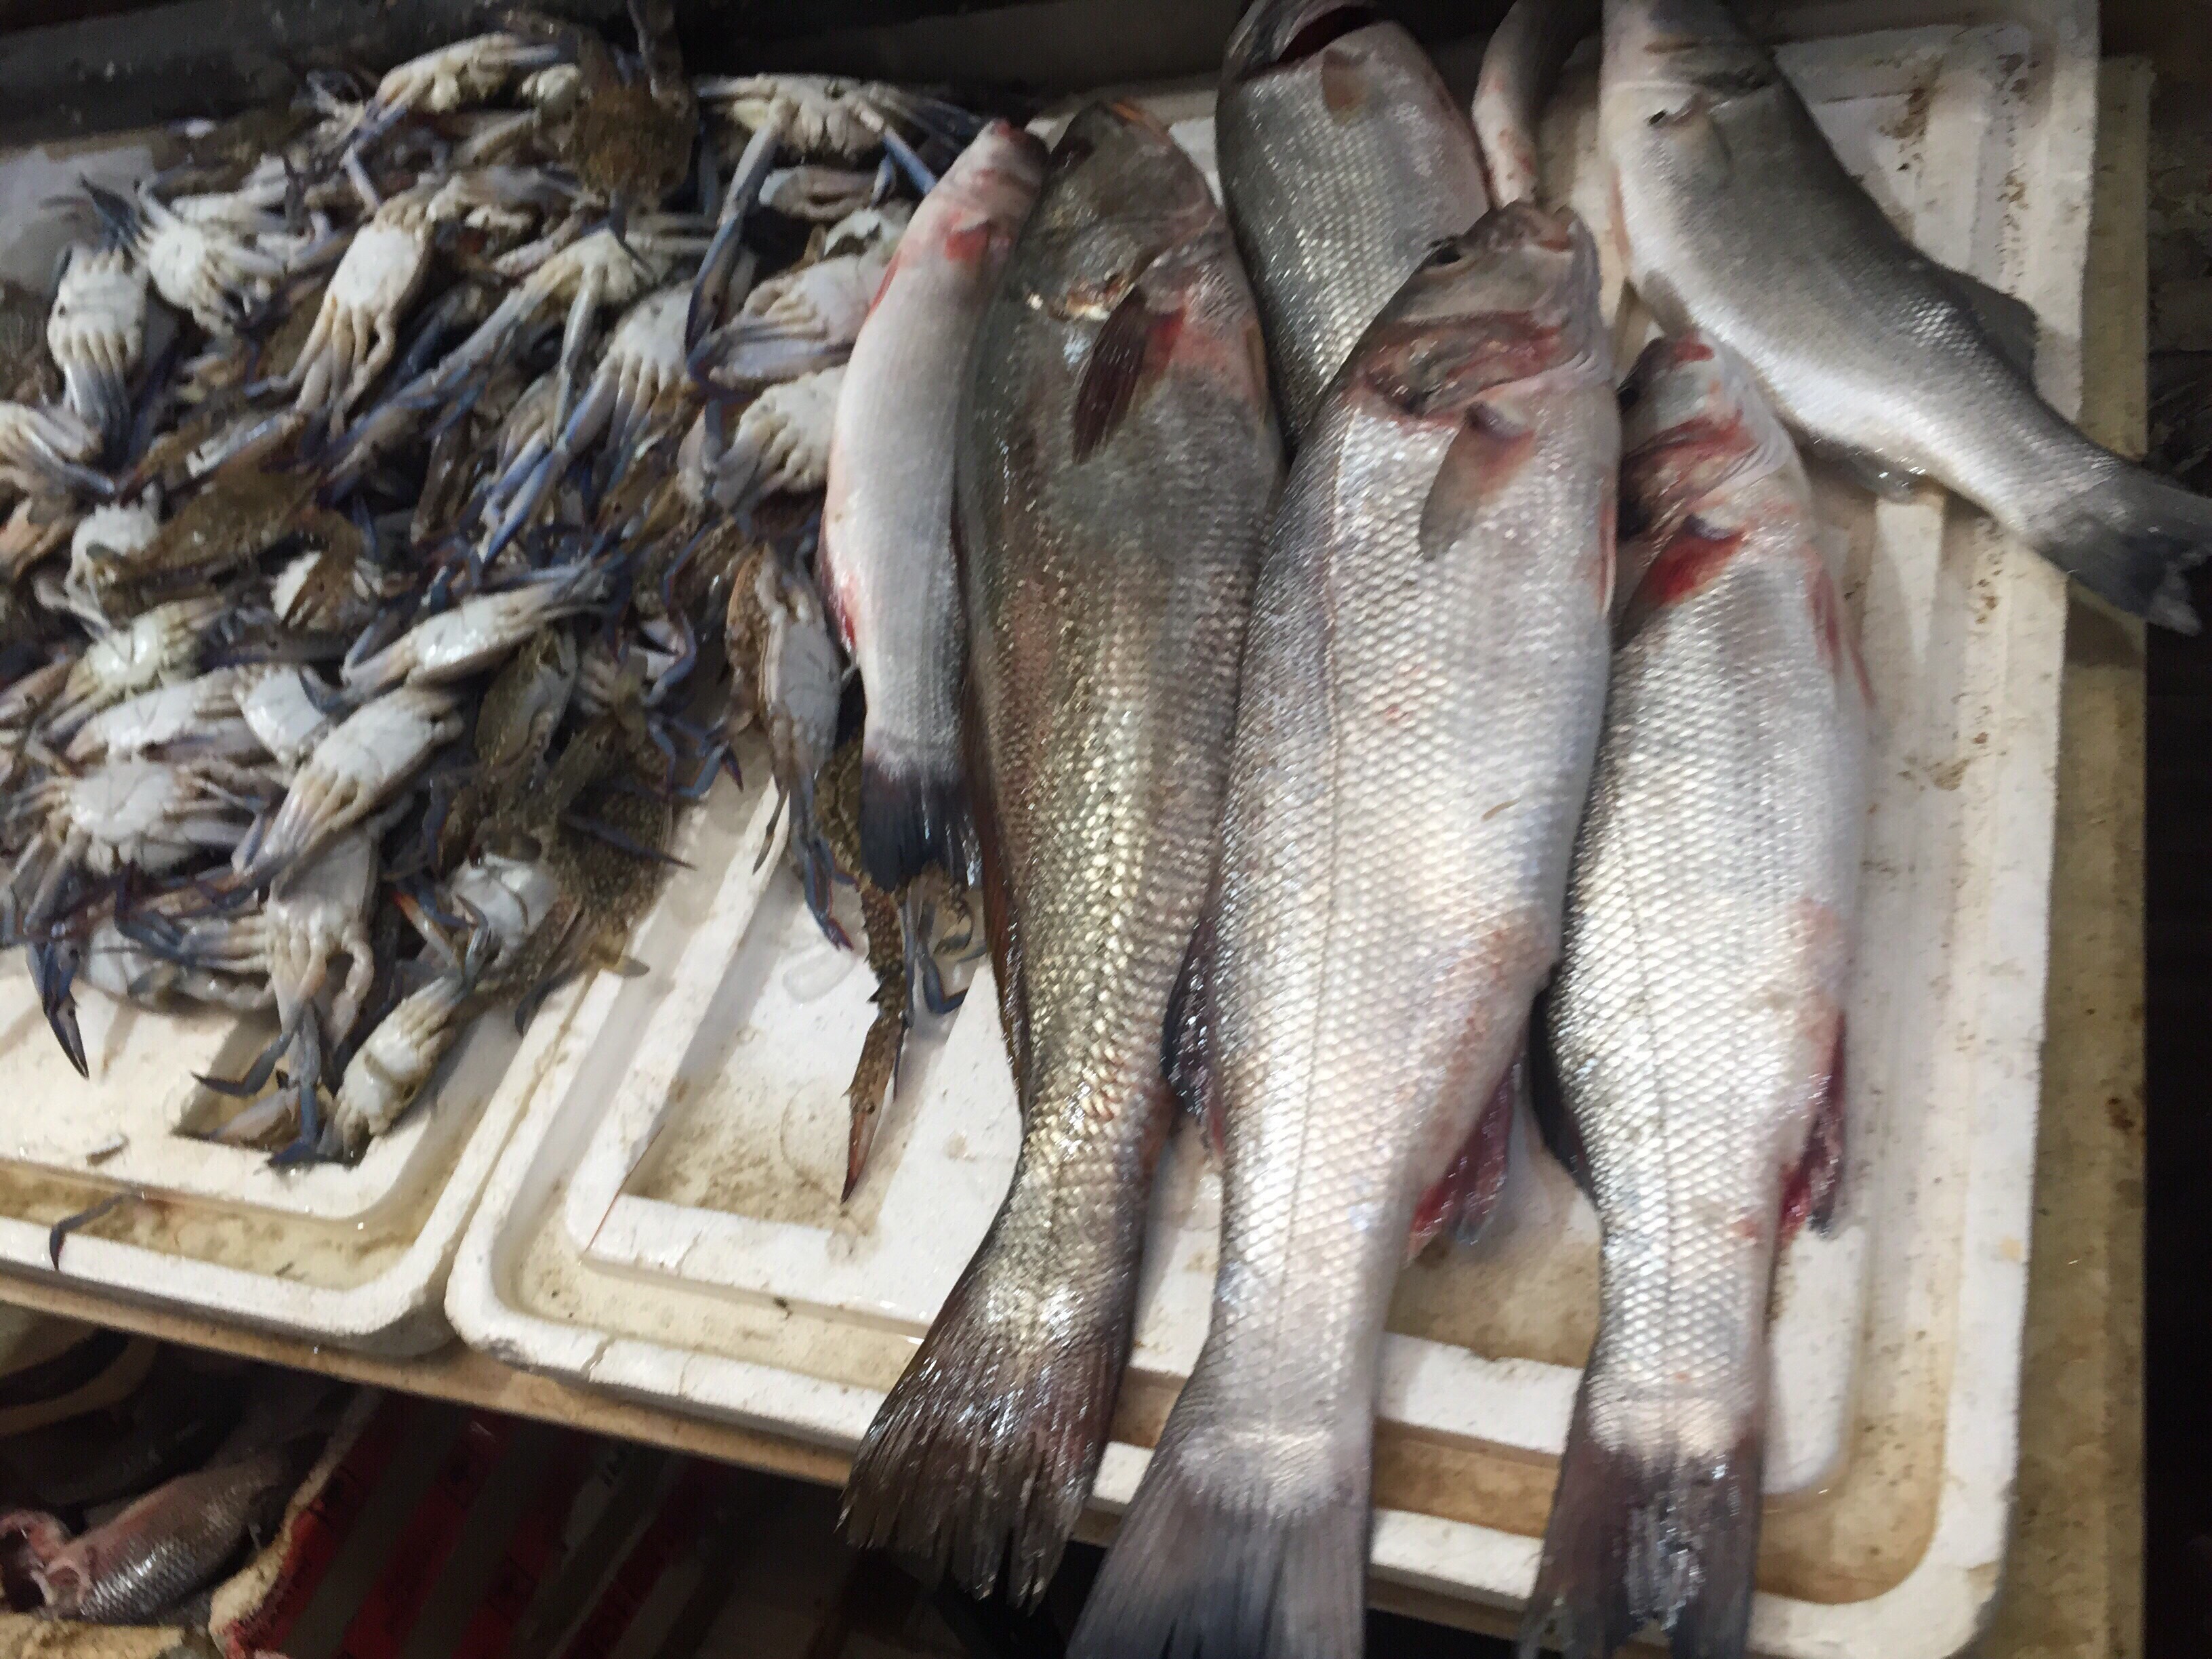  سوق بورسعيد للأسماك بمحافظة الإسماعيلية (9)